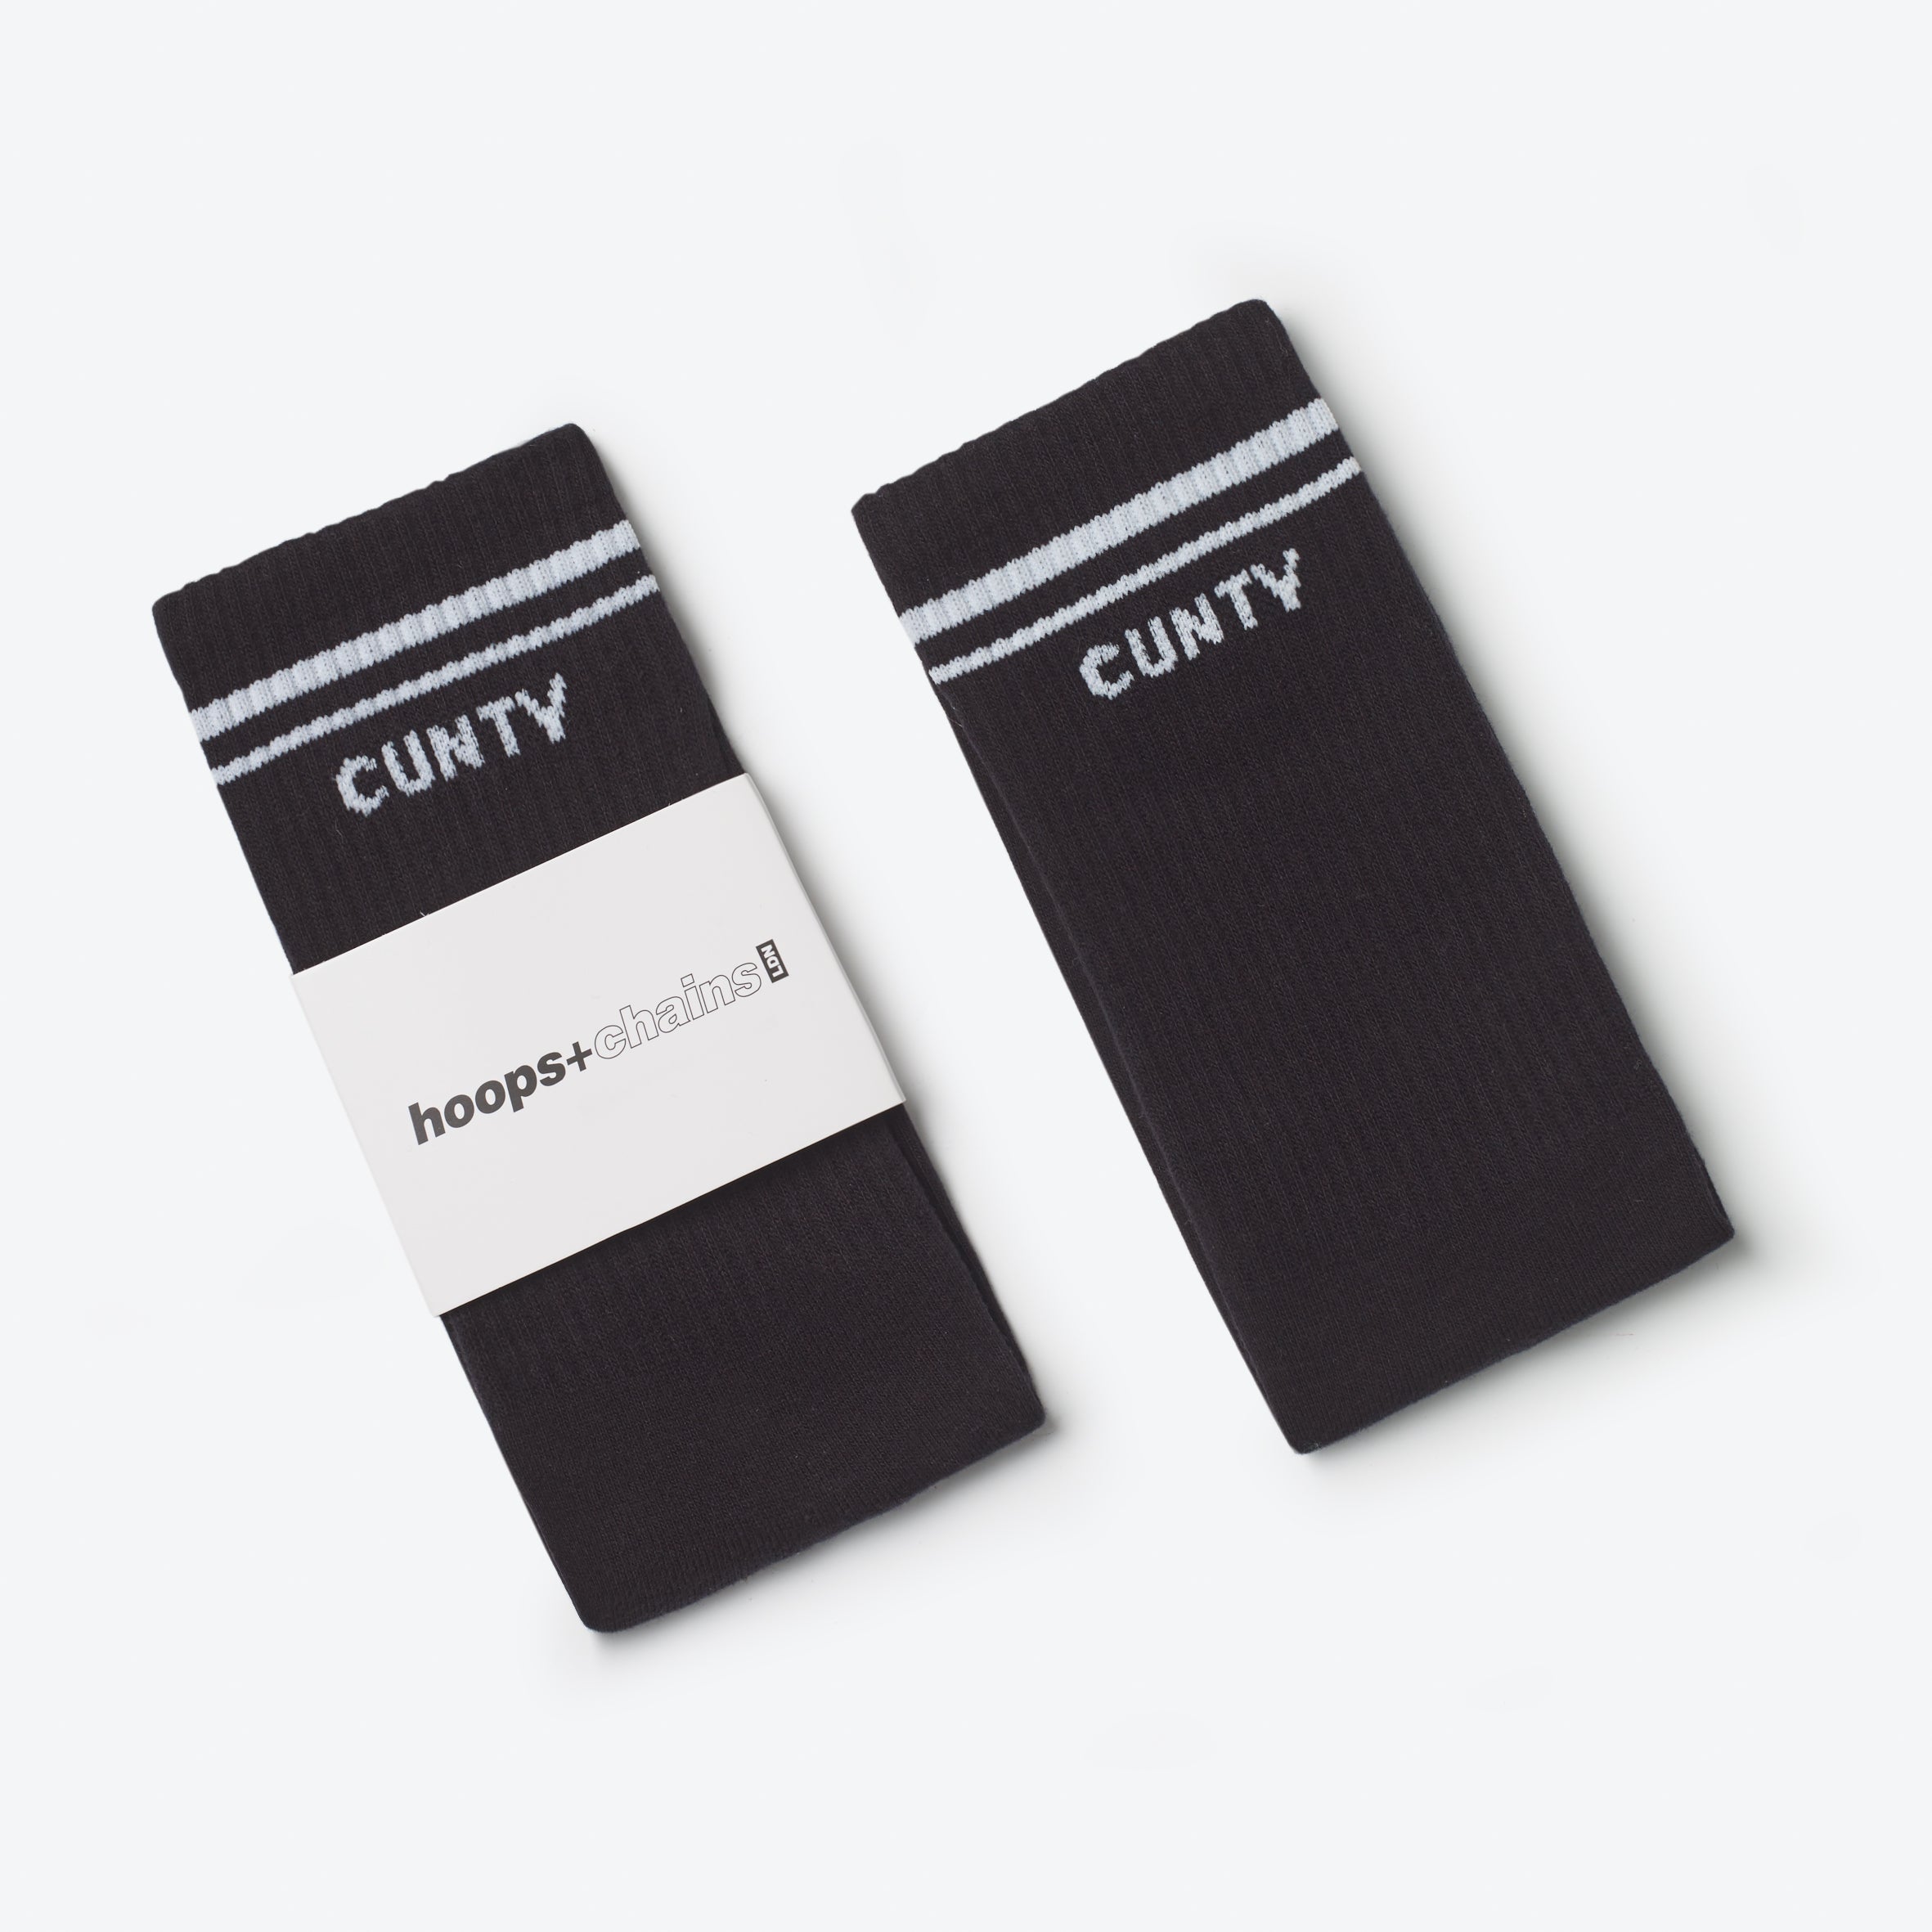 Cunty Socks Black